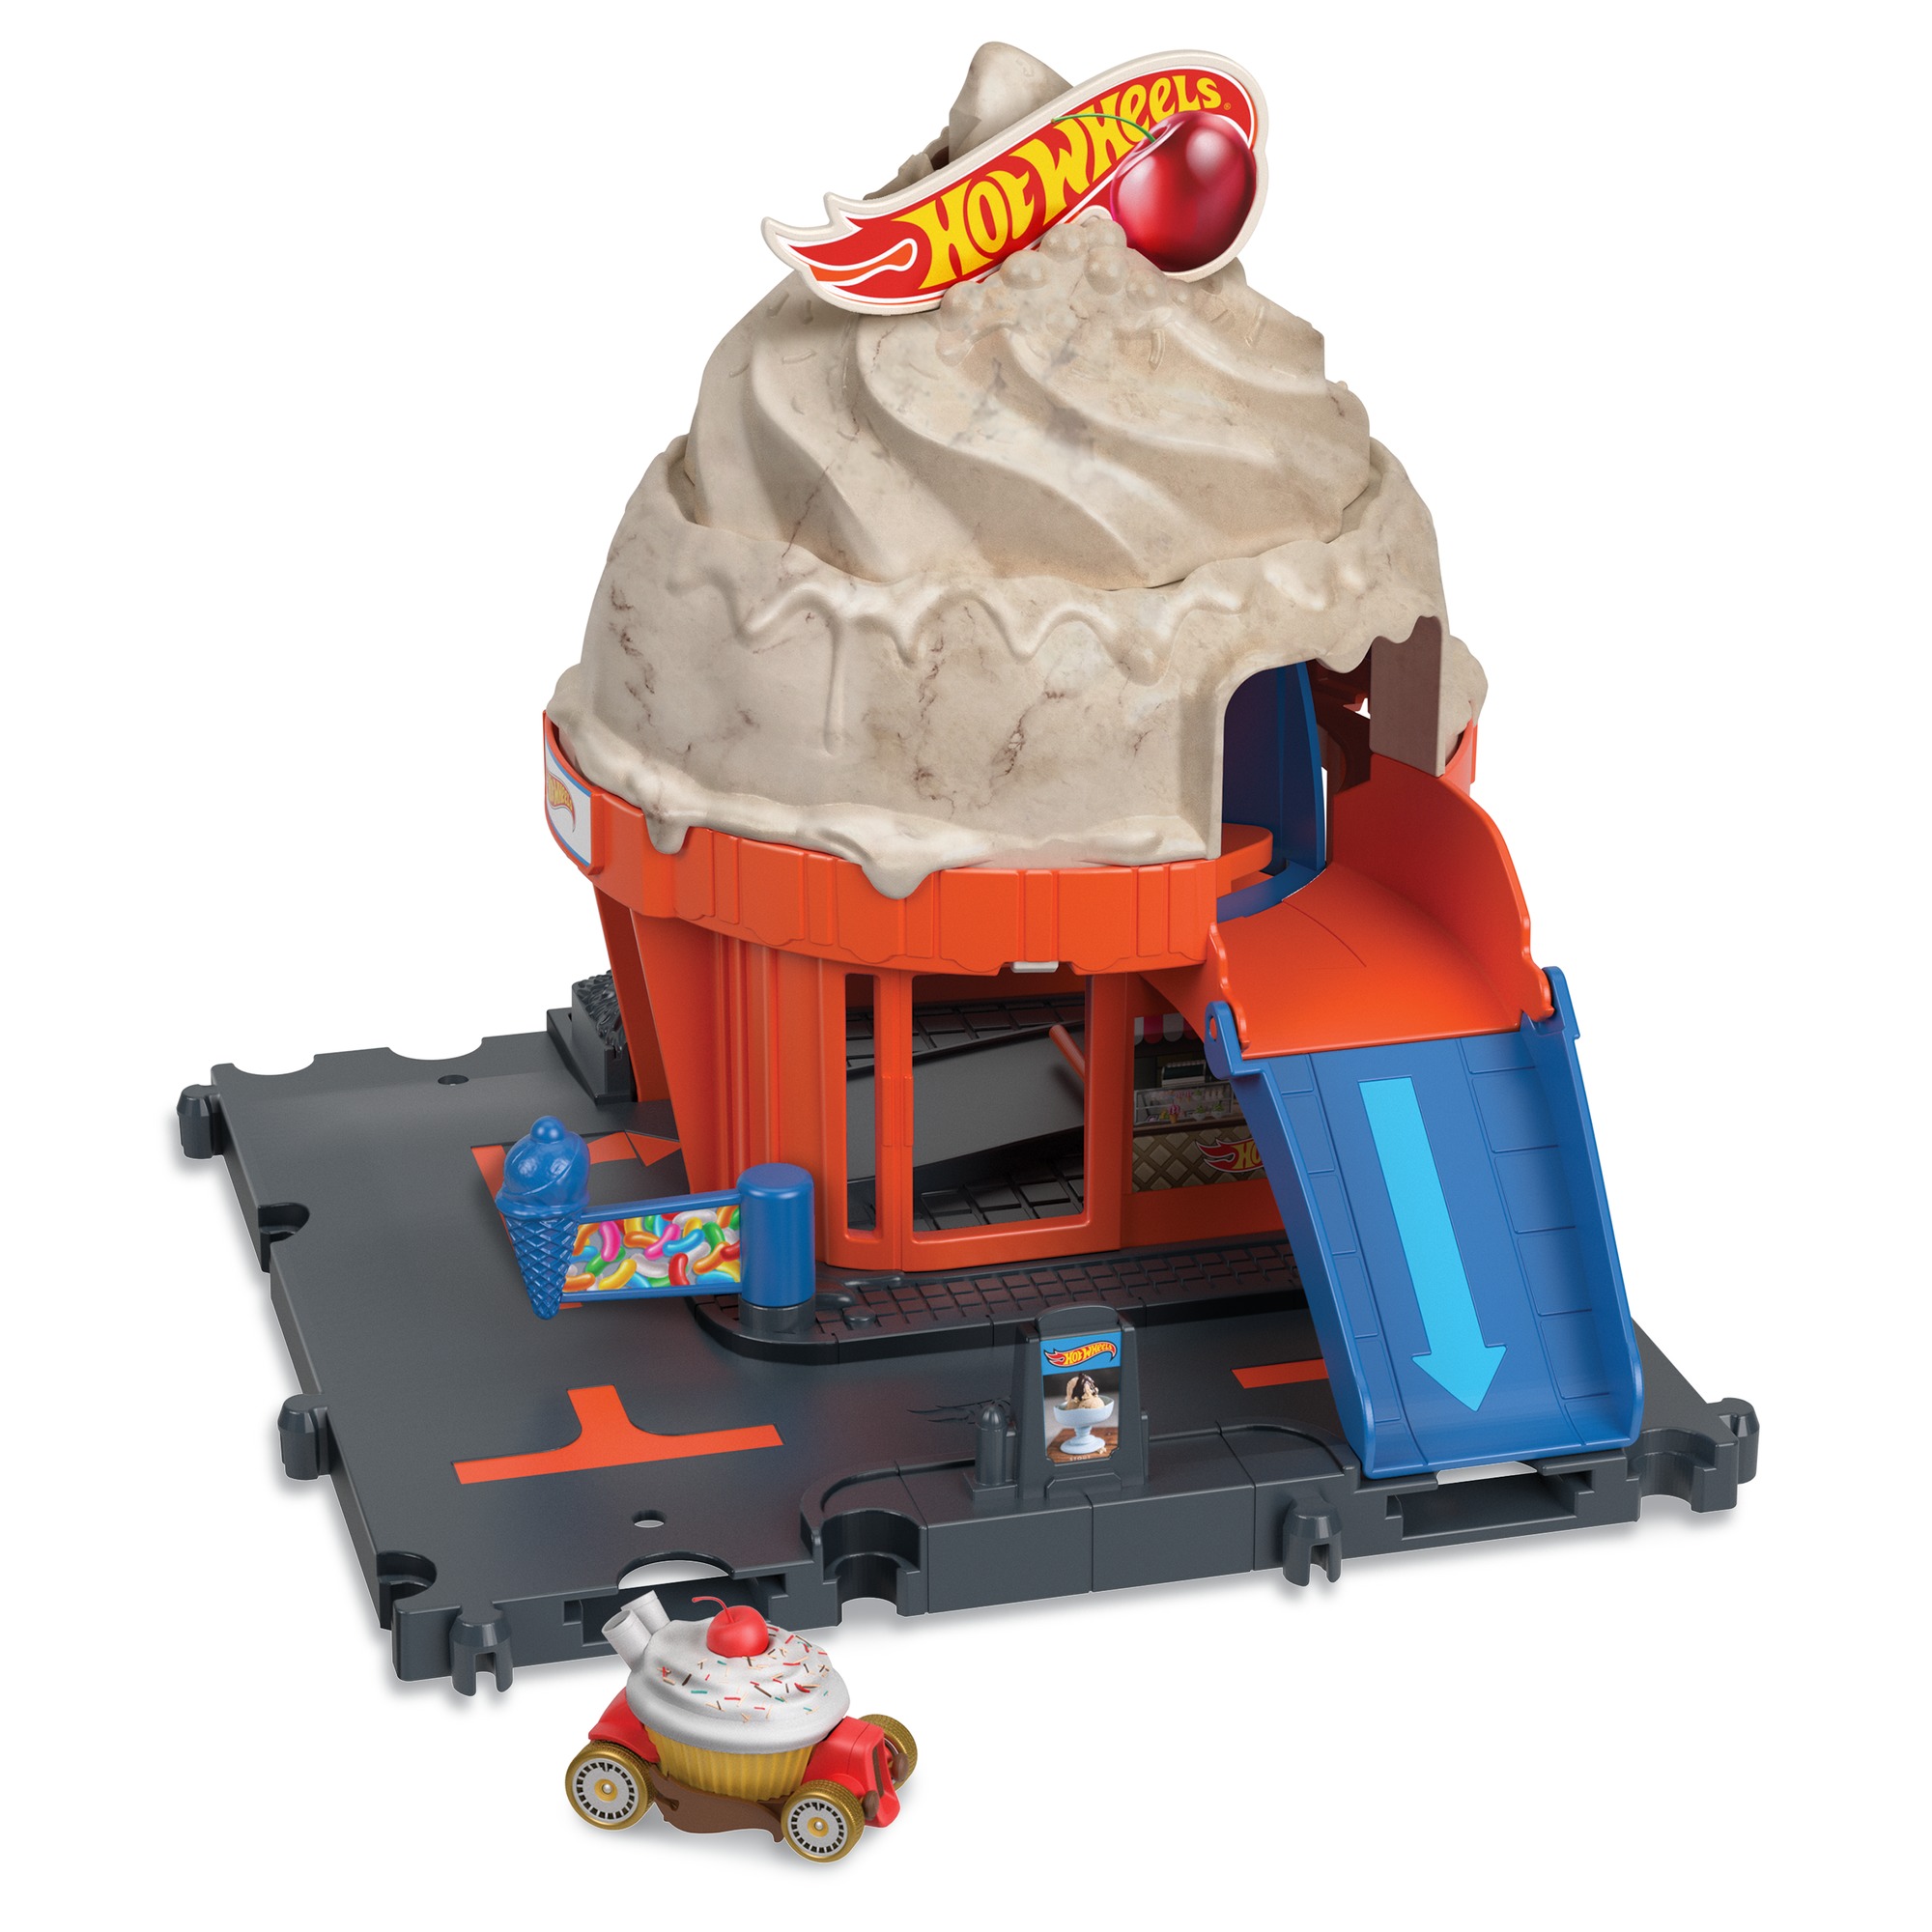 Акция на Ігровий набір Hot Wheels City Пригоди в магазині морозива (HKX38) от Будинок іграшок